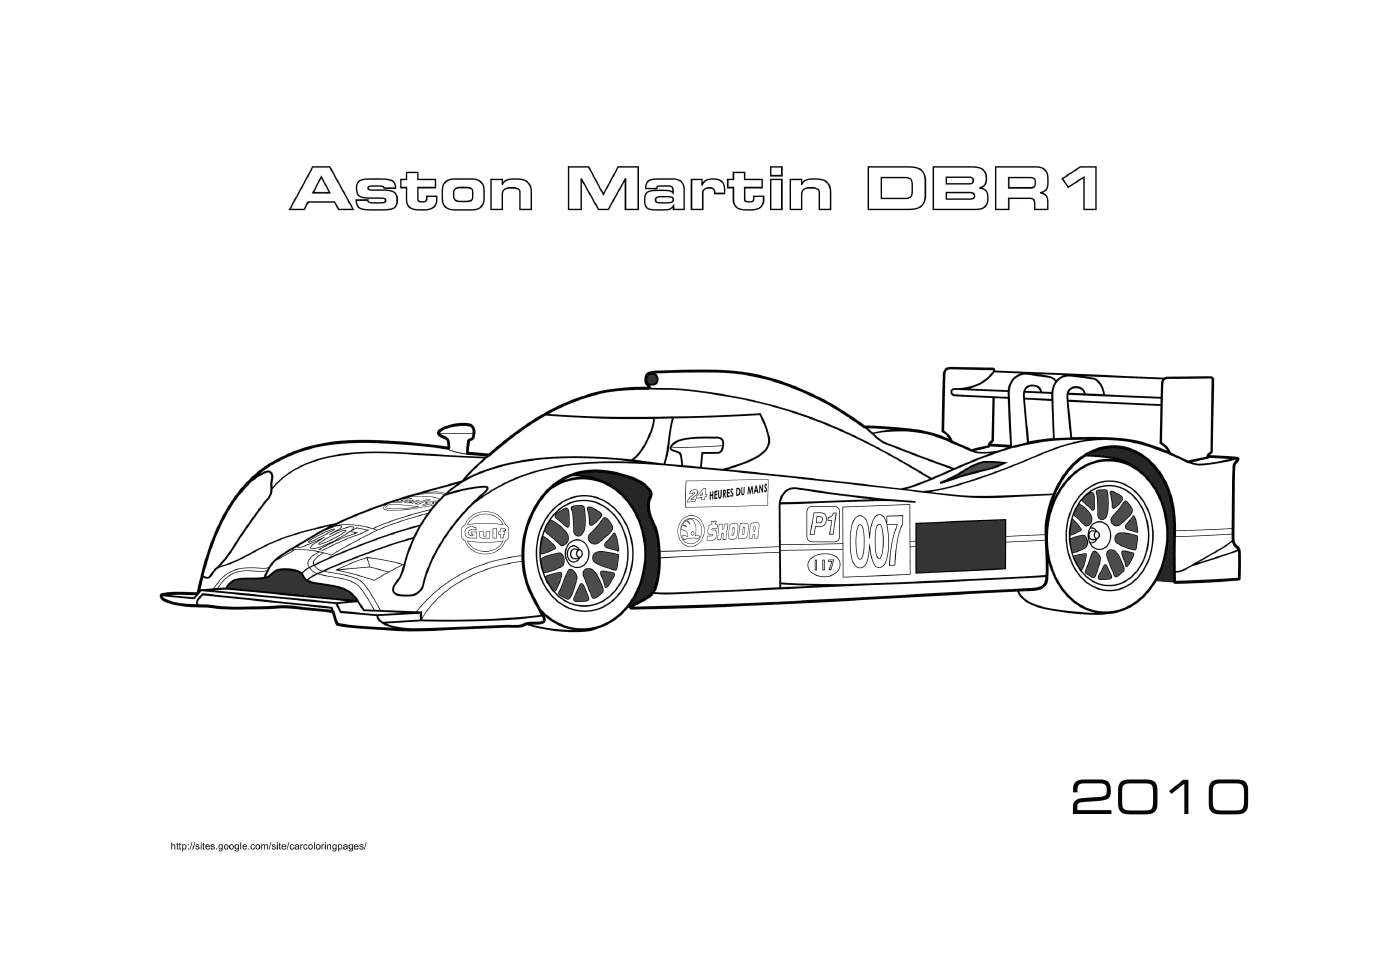  Aston Martin DBR1 2010, Fórmula 1 